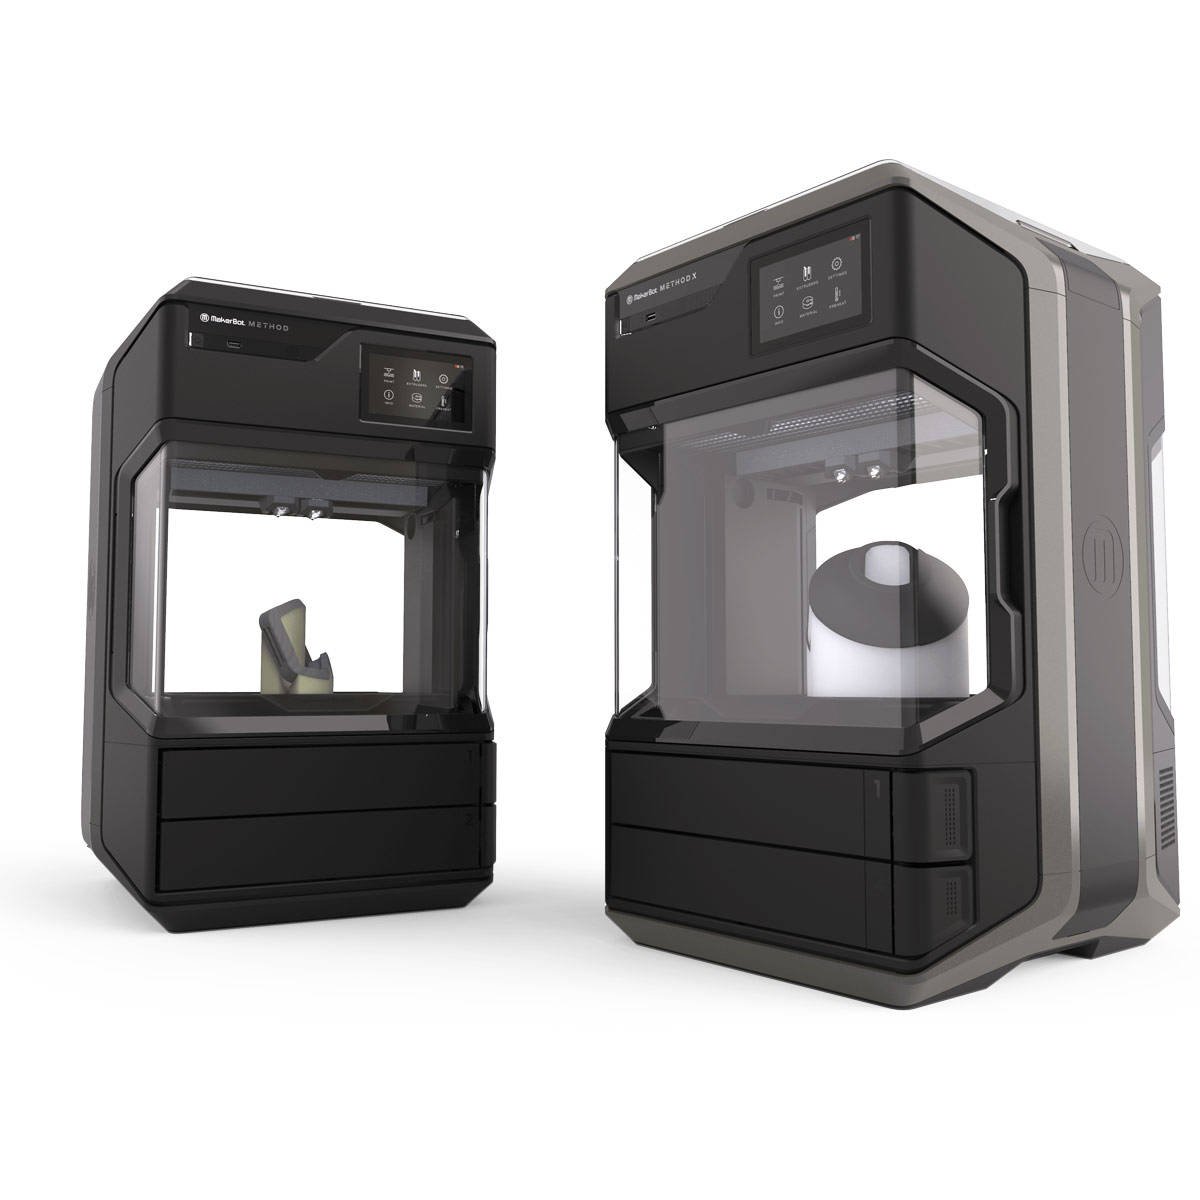 Immagine di RS Components presenta la nuova stampante MakerBot Method 3D